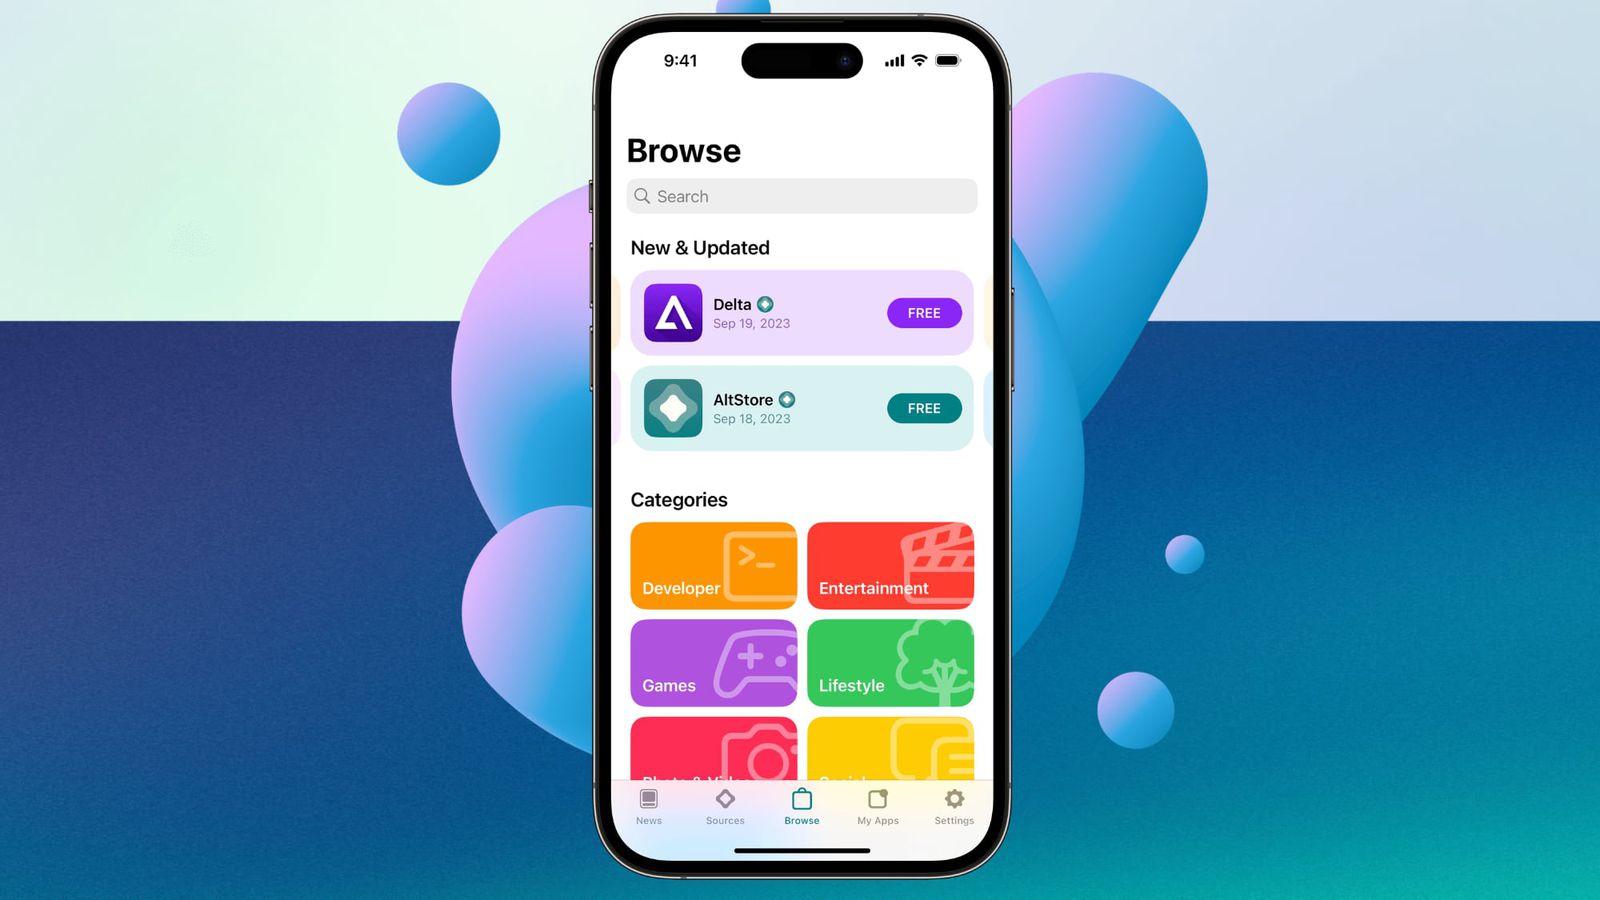 iPhoneislam.com से, एक स्मार्टफोन "नए और अपडेटेड" और "मार्जिन न्यूज़" जैसी श्रेणियों के तहत रंगीन ऐप आइकन के साथ एक ऐप स्टोर इंटरफ़ेस प्रदर्शित करता है।